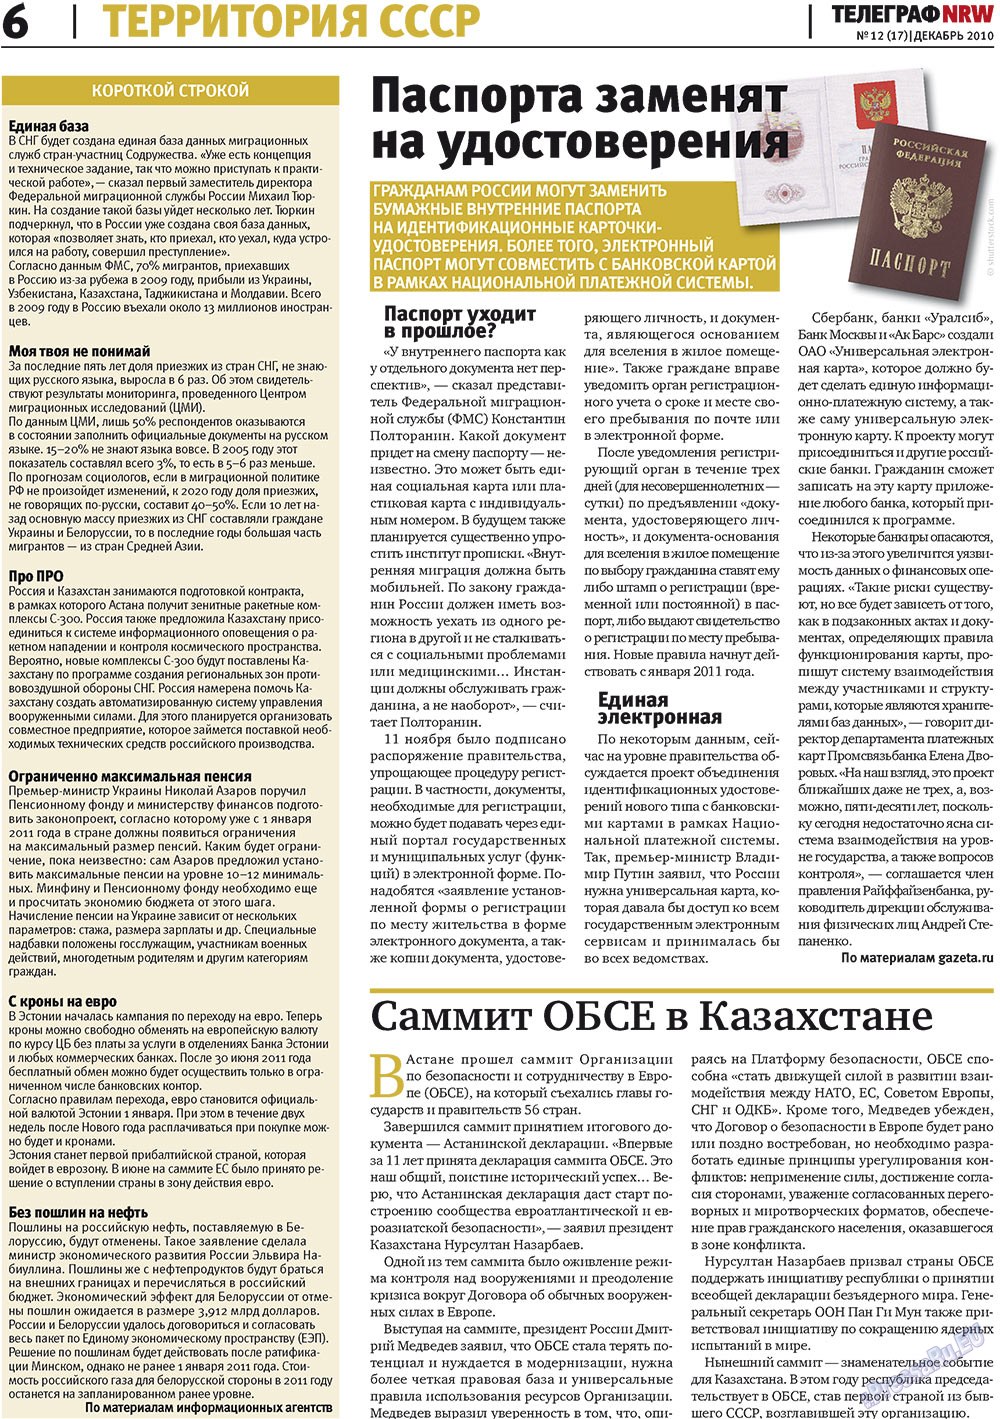 Телеграф NRW (газета). 2010 год, номер 12, стр. 6